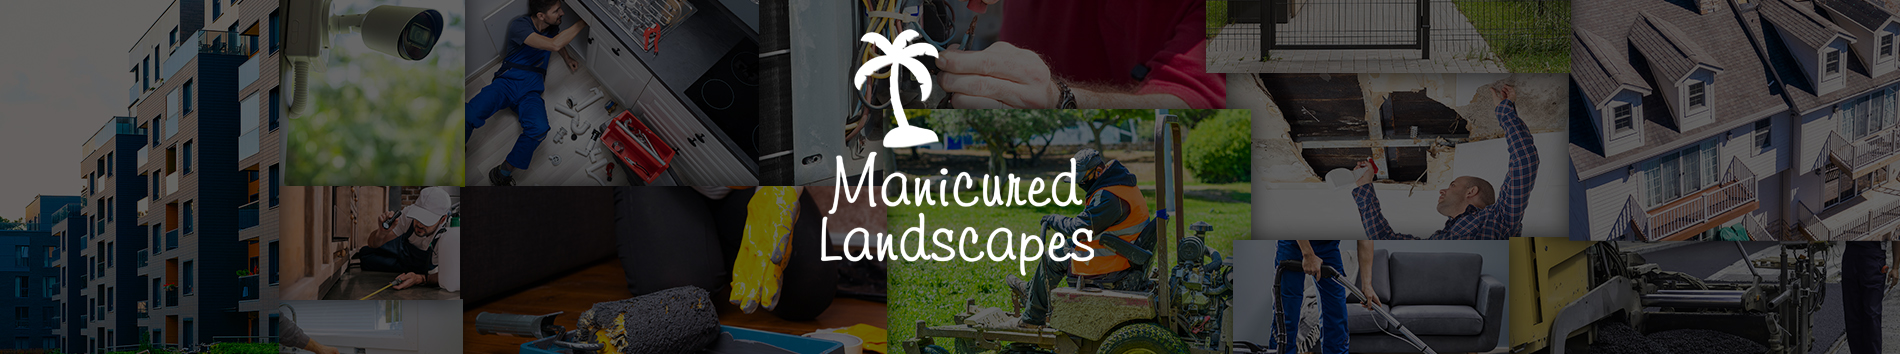 Manicured Landscapes, Inc.